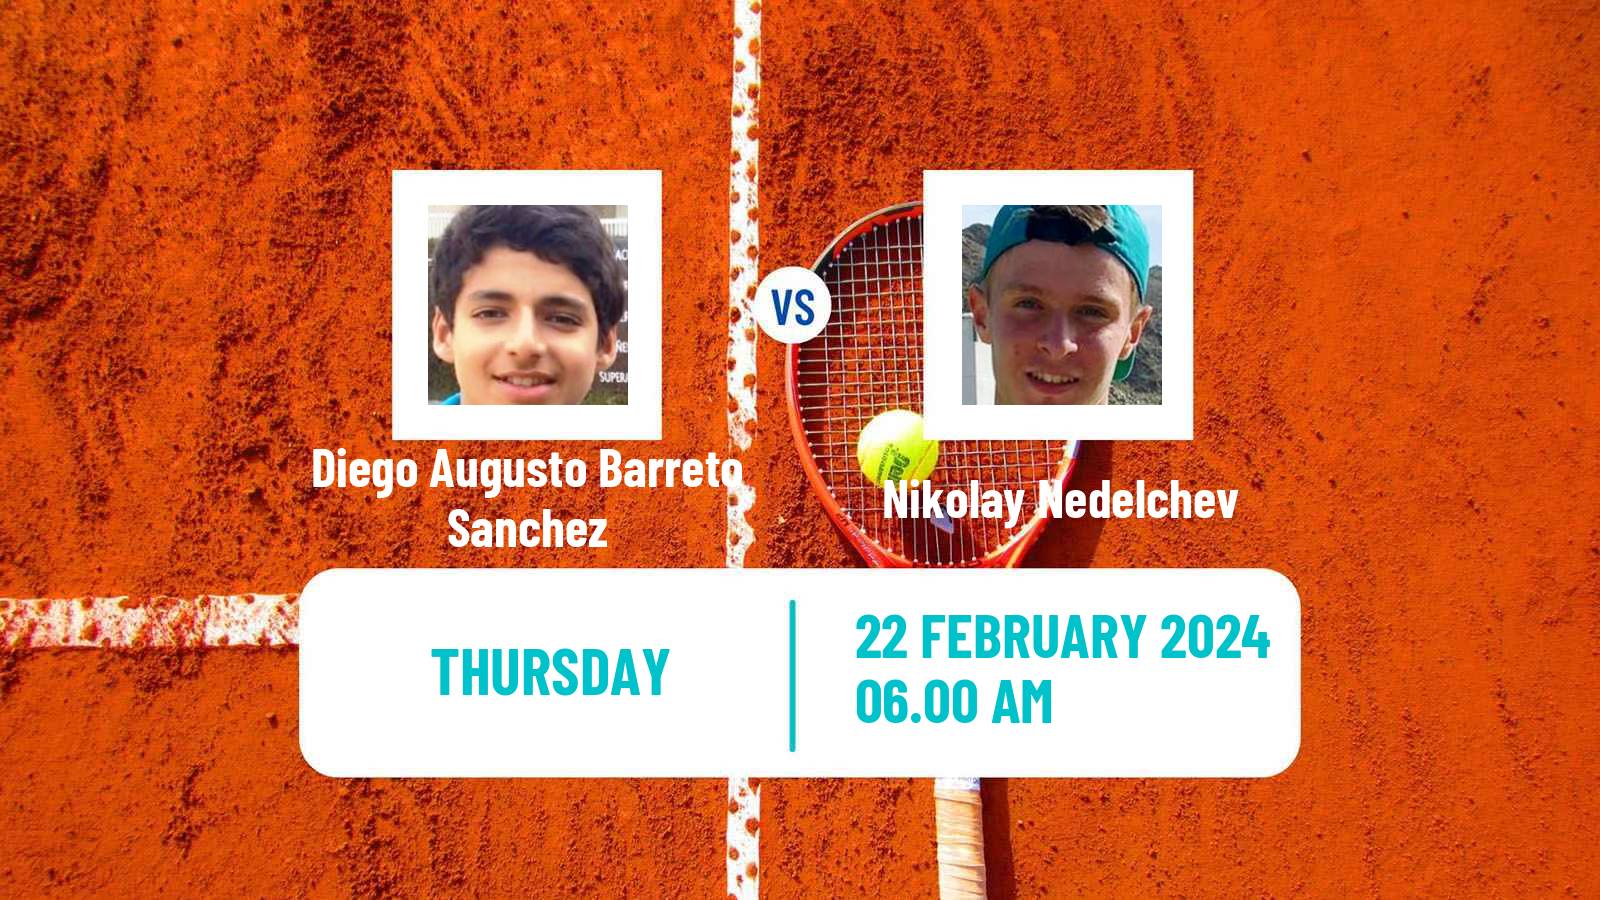 Tennis ITF M15 Villena Men Diego Augusto Barreto Sanchez - Nikolay Nedelchev